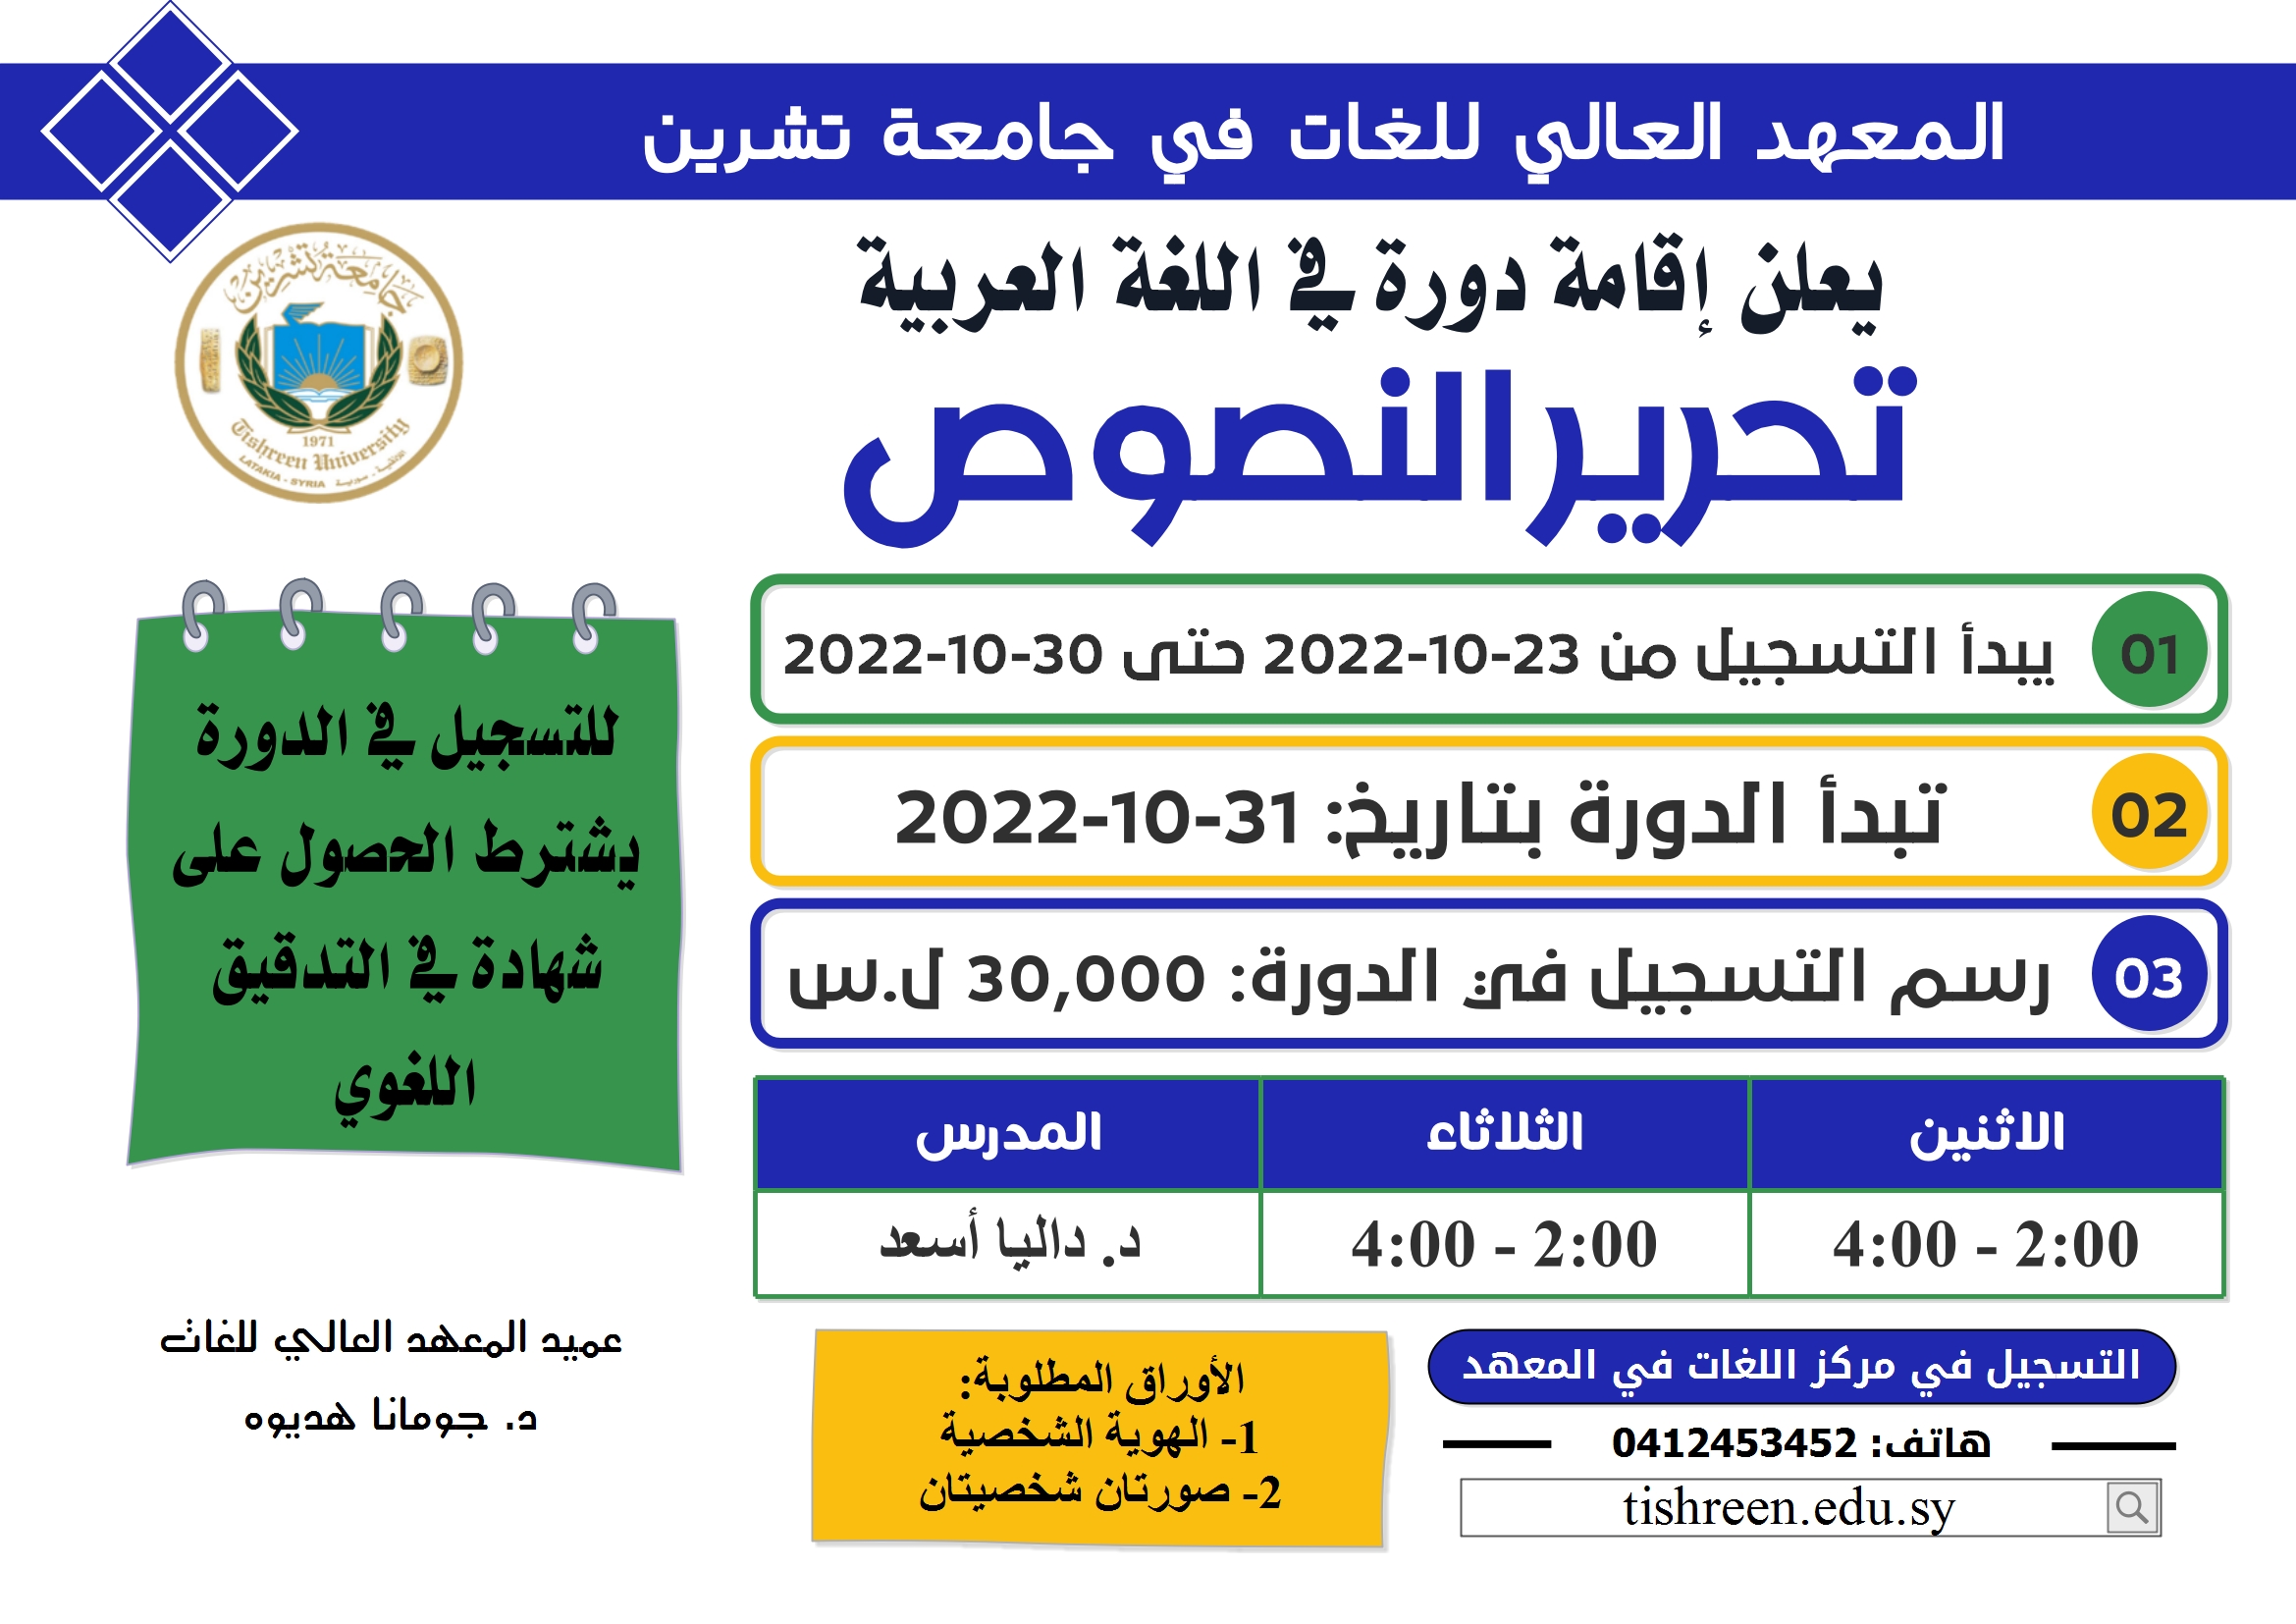 المعهد العالي للغات يعلن إقامة دورة تحرير النصوص في اللغة العربية تبدء بتاريخ 31-10-2022